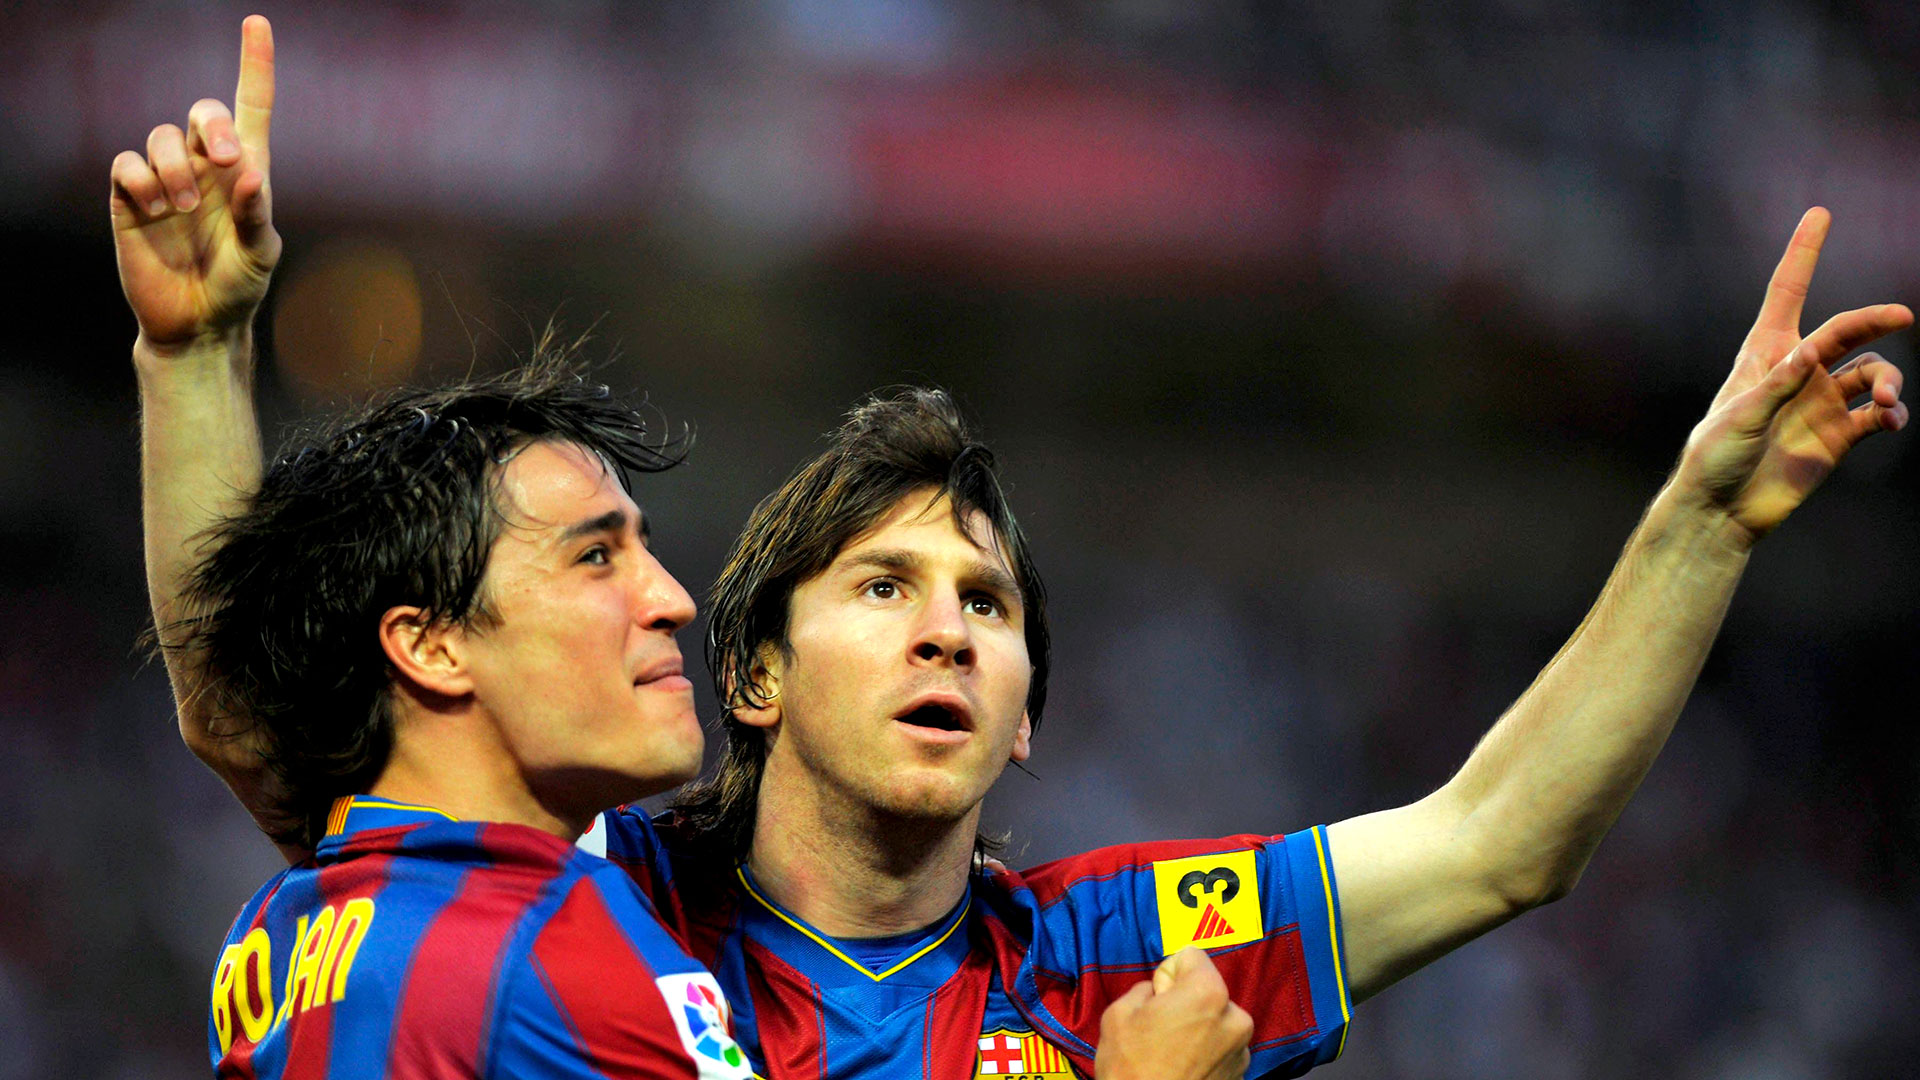 Lionel Messi celebra con su compañero en el Barcelona, Bojan Krkic, tras un encuentro ante el Sevilla disputado en el estadio Ramón Sánchez Pizjuan el 8 de mayo de 2010 (AFP PHOTO / JORGE GUERRERO)